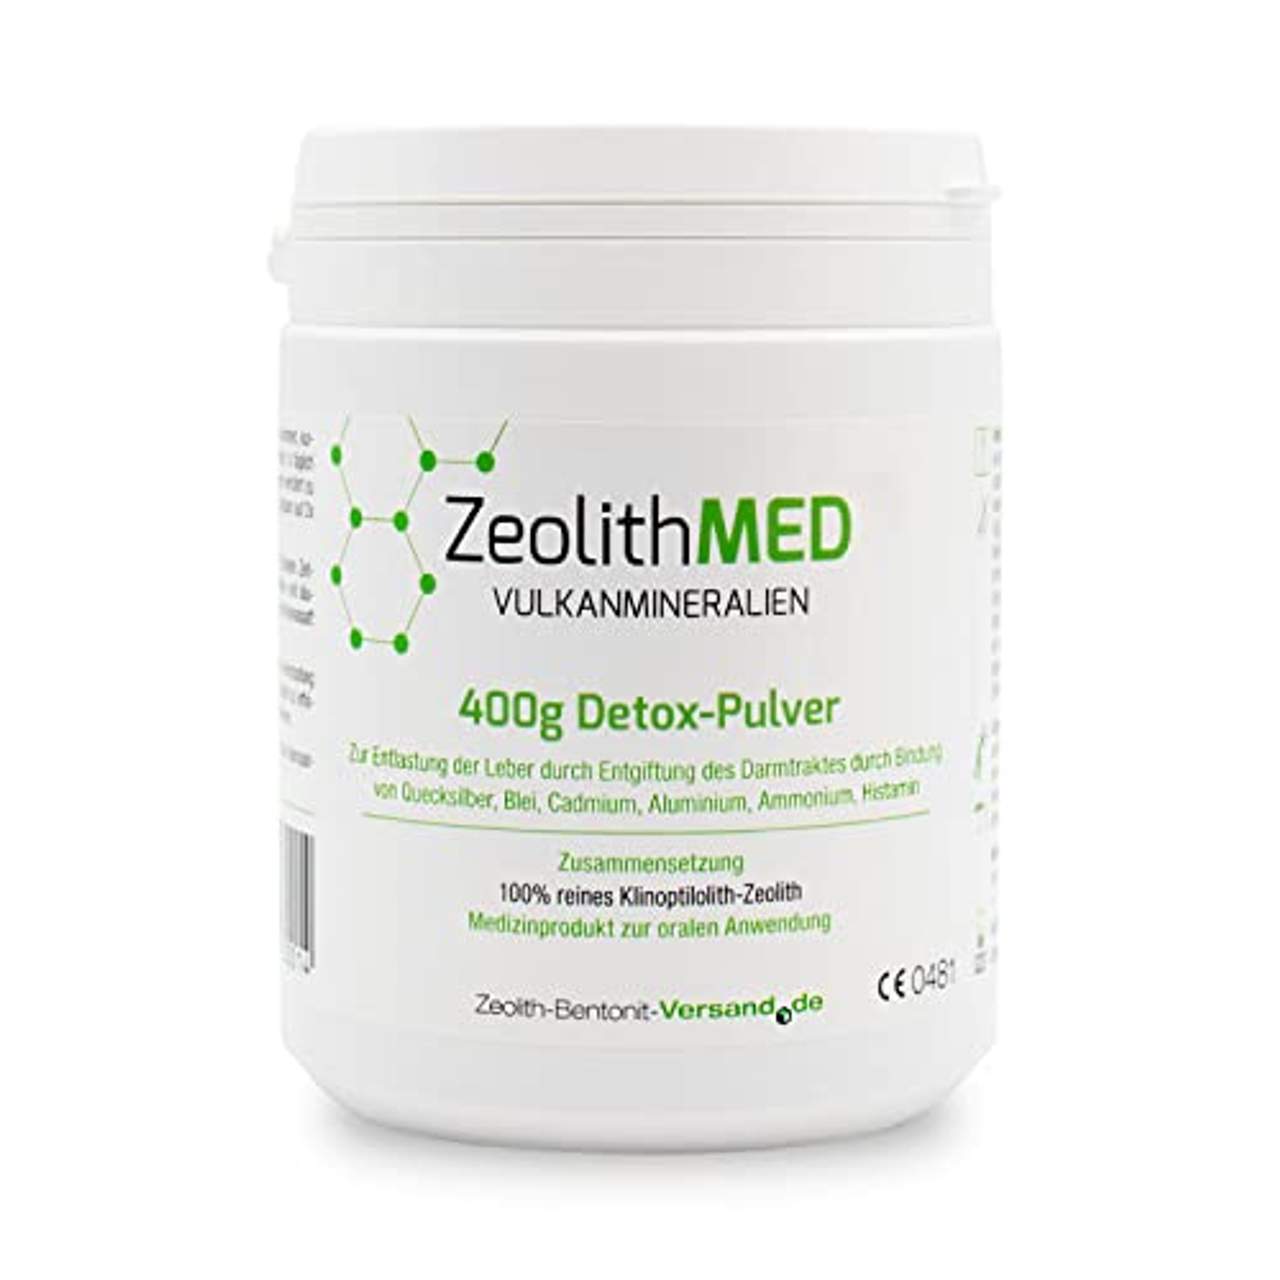 Zeolith MED Detox-Pulver 400g